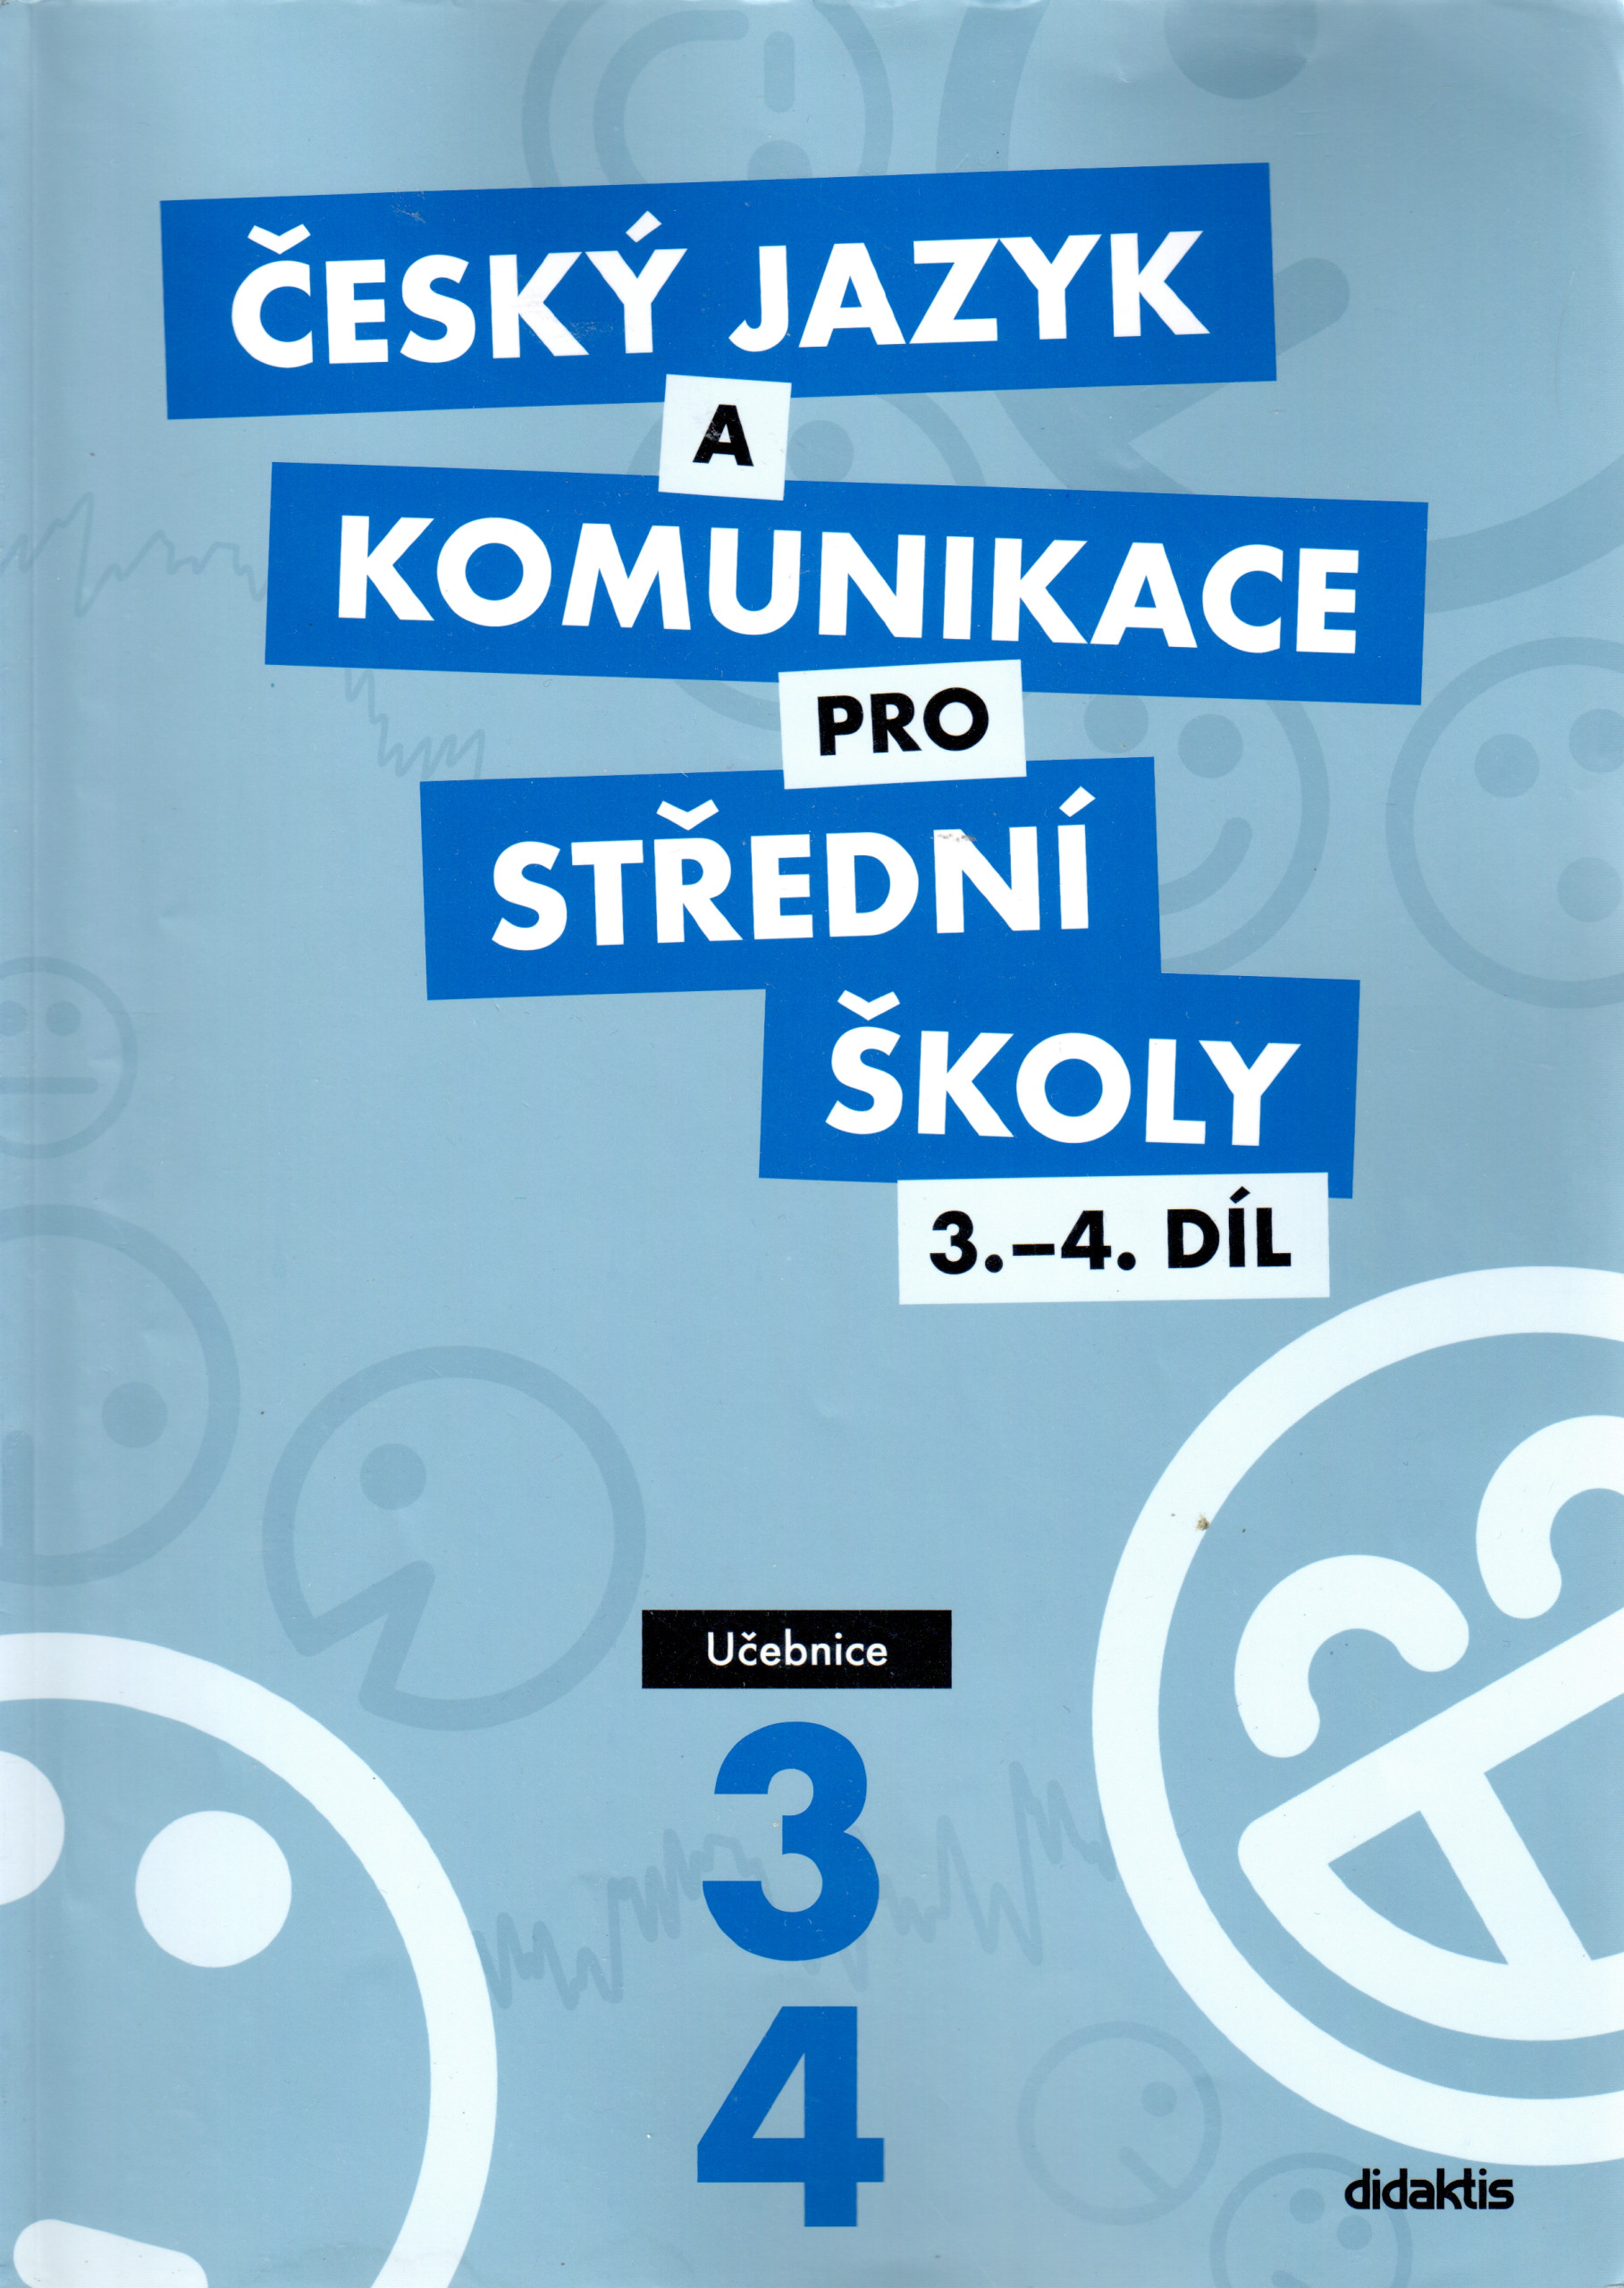 Český jazyk a komunikace pro střední školy (3.-4. díl) : učebnice - Náhled učebnice